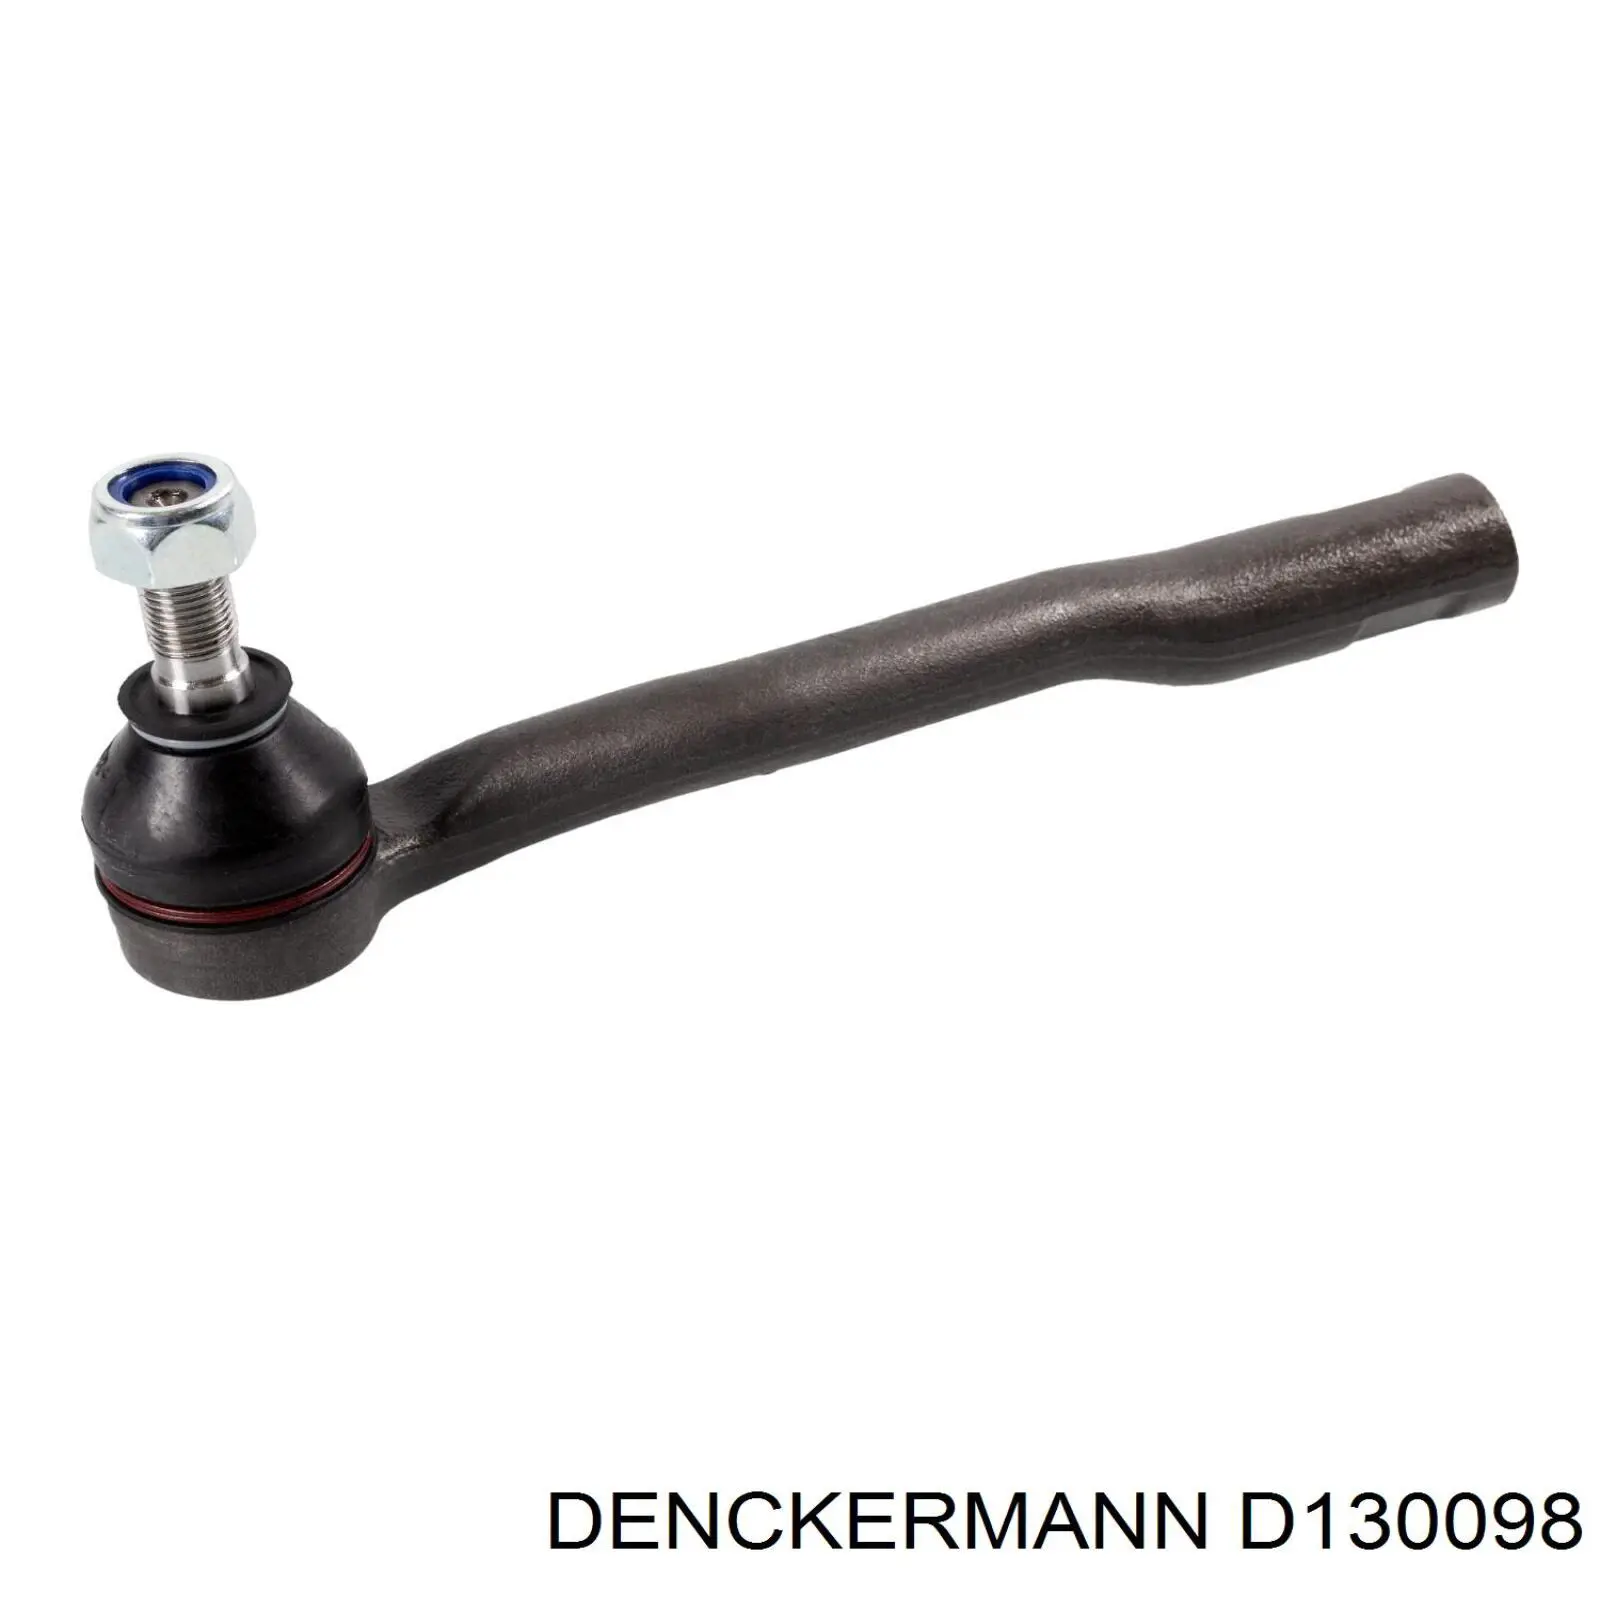 D130098 Denckermann rótula barra de acoplamiento exterior